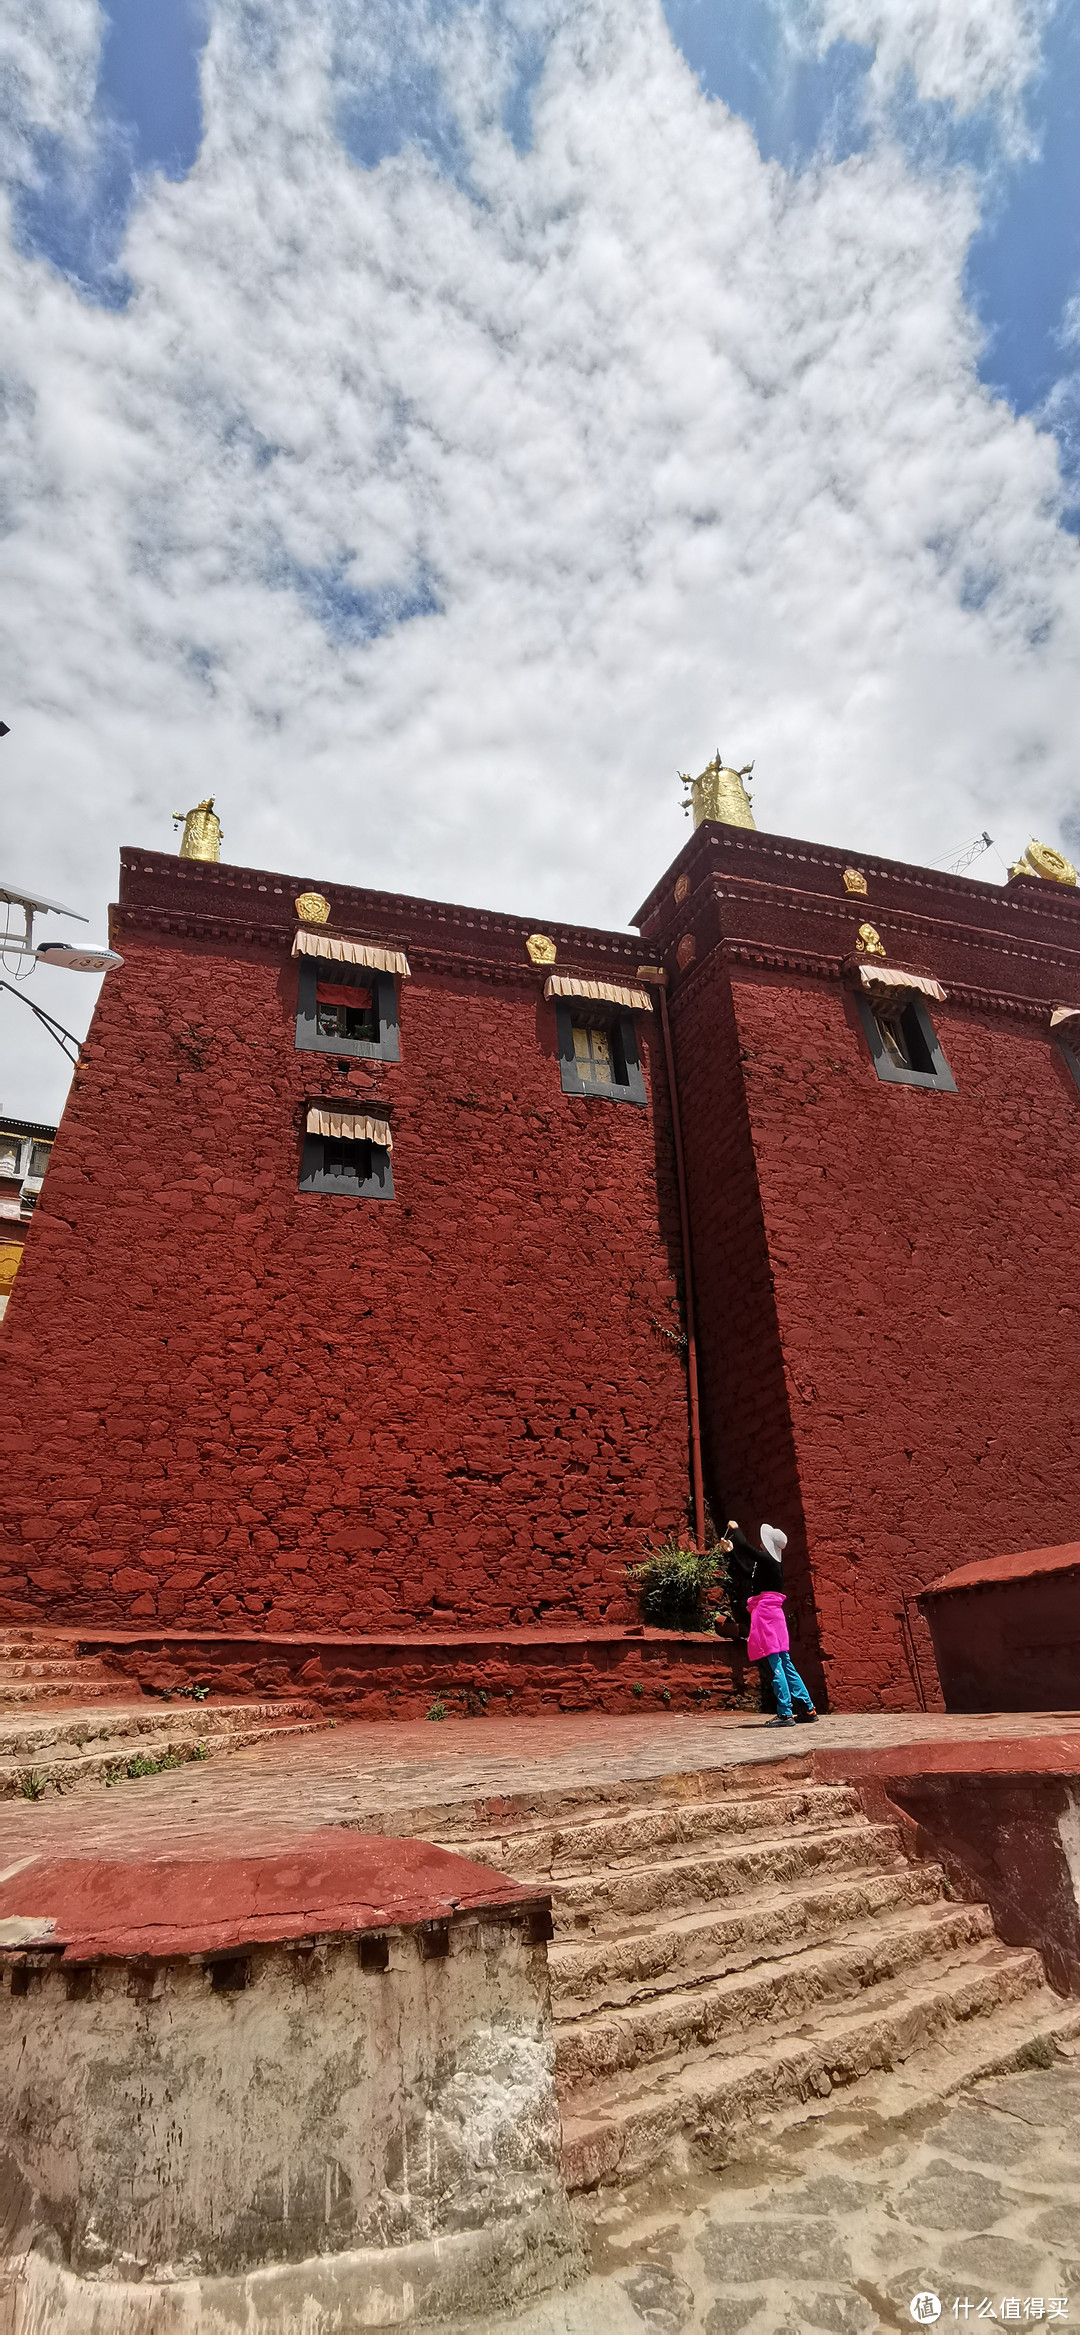 甘丹寺，是黄教六大寺中地位最特殊的一座寺庙，它是由藏传佛教格鲁派的创始人宗喀巴于1409年亲自筹建的